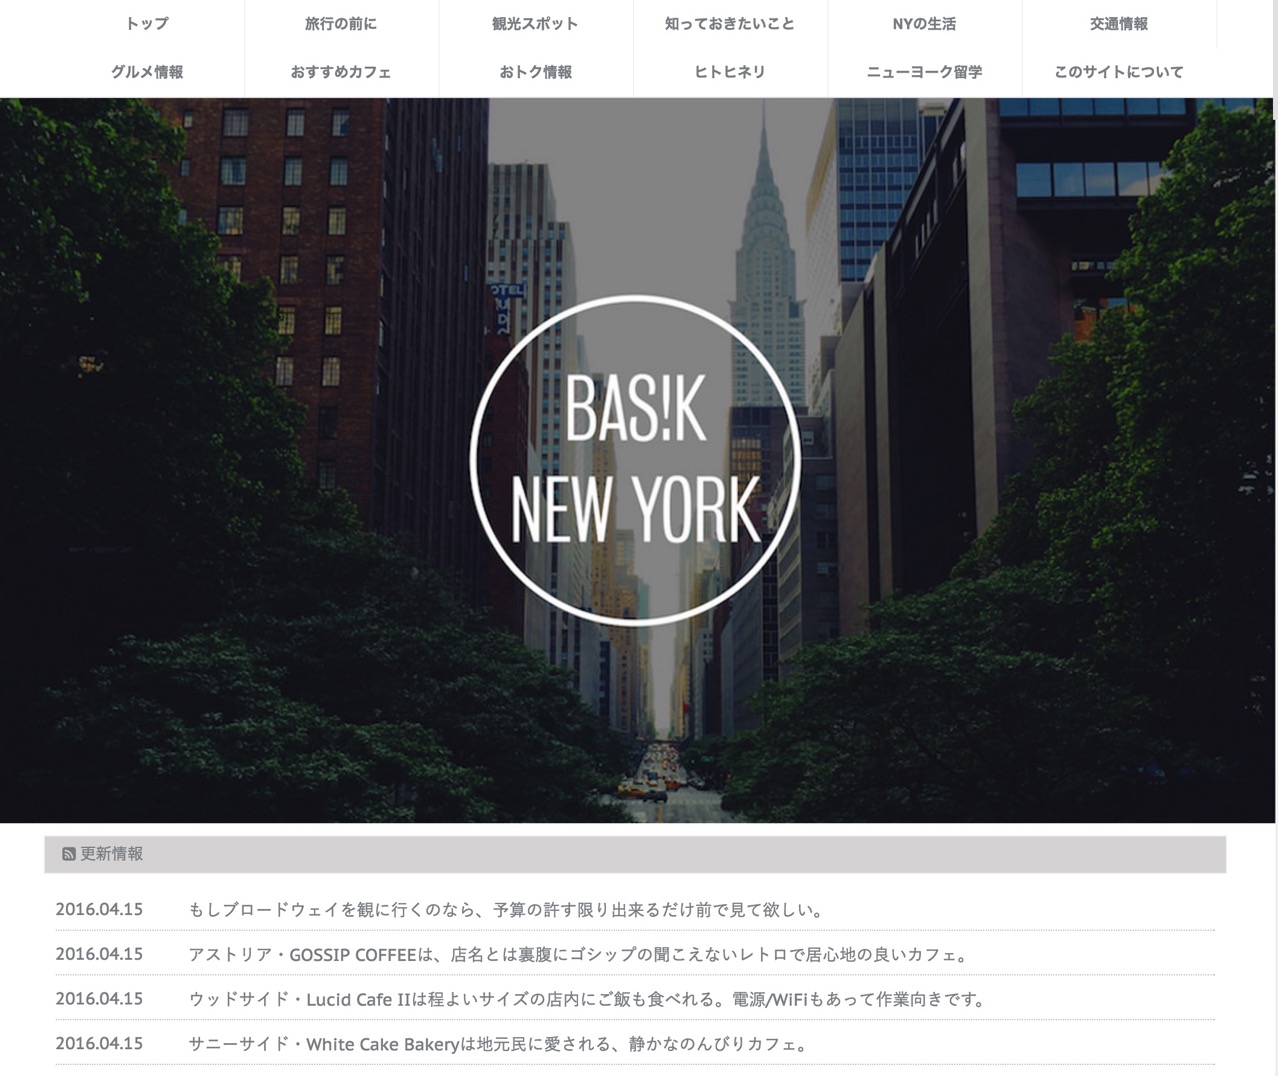 ニューヨークの観光旅行情報サイト BASIK NEW YORK